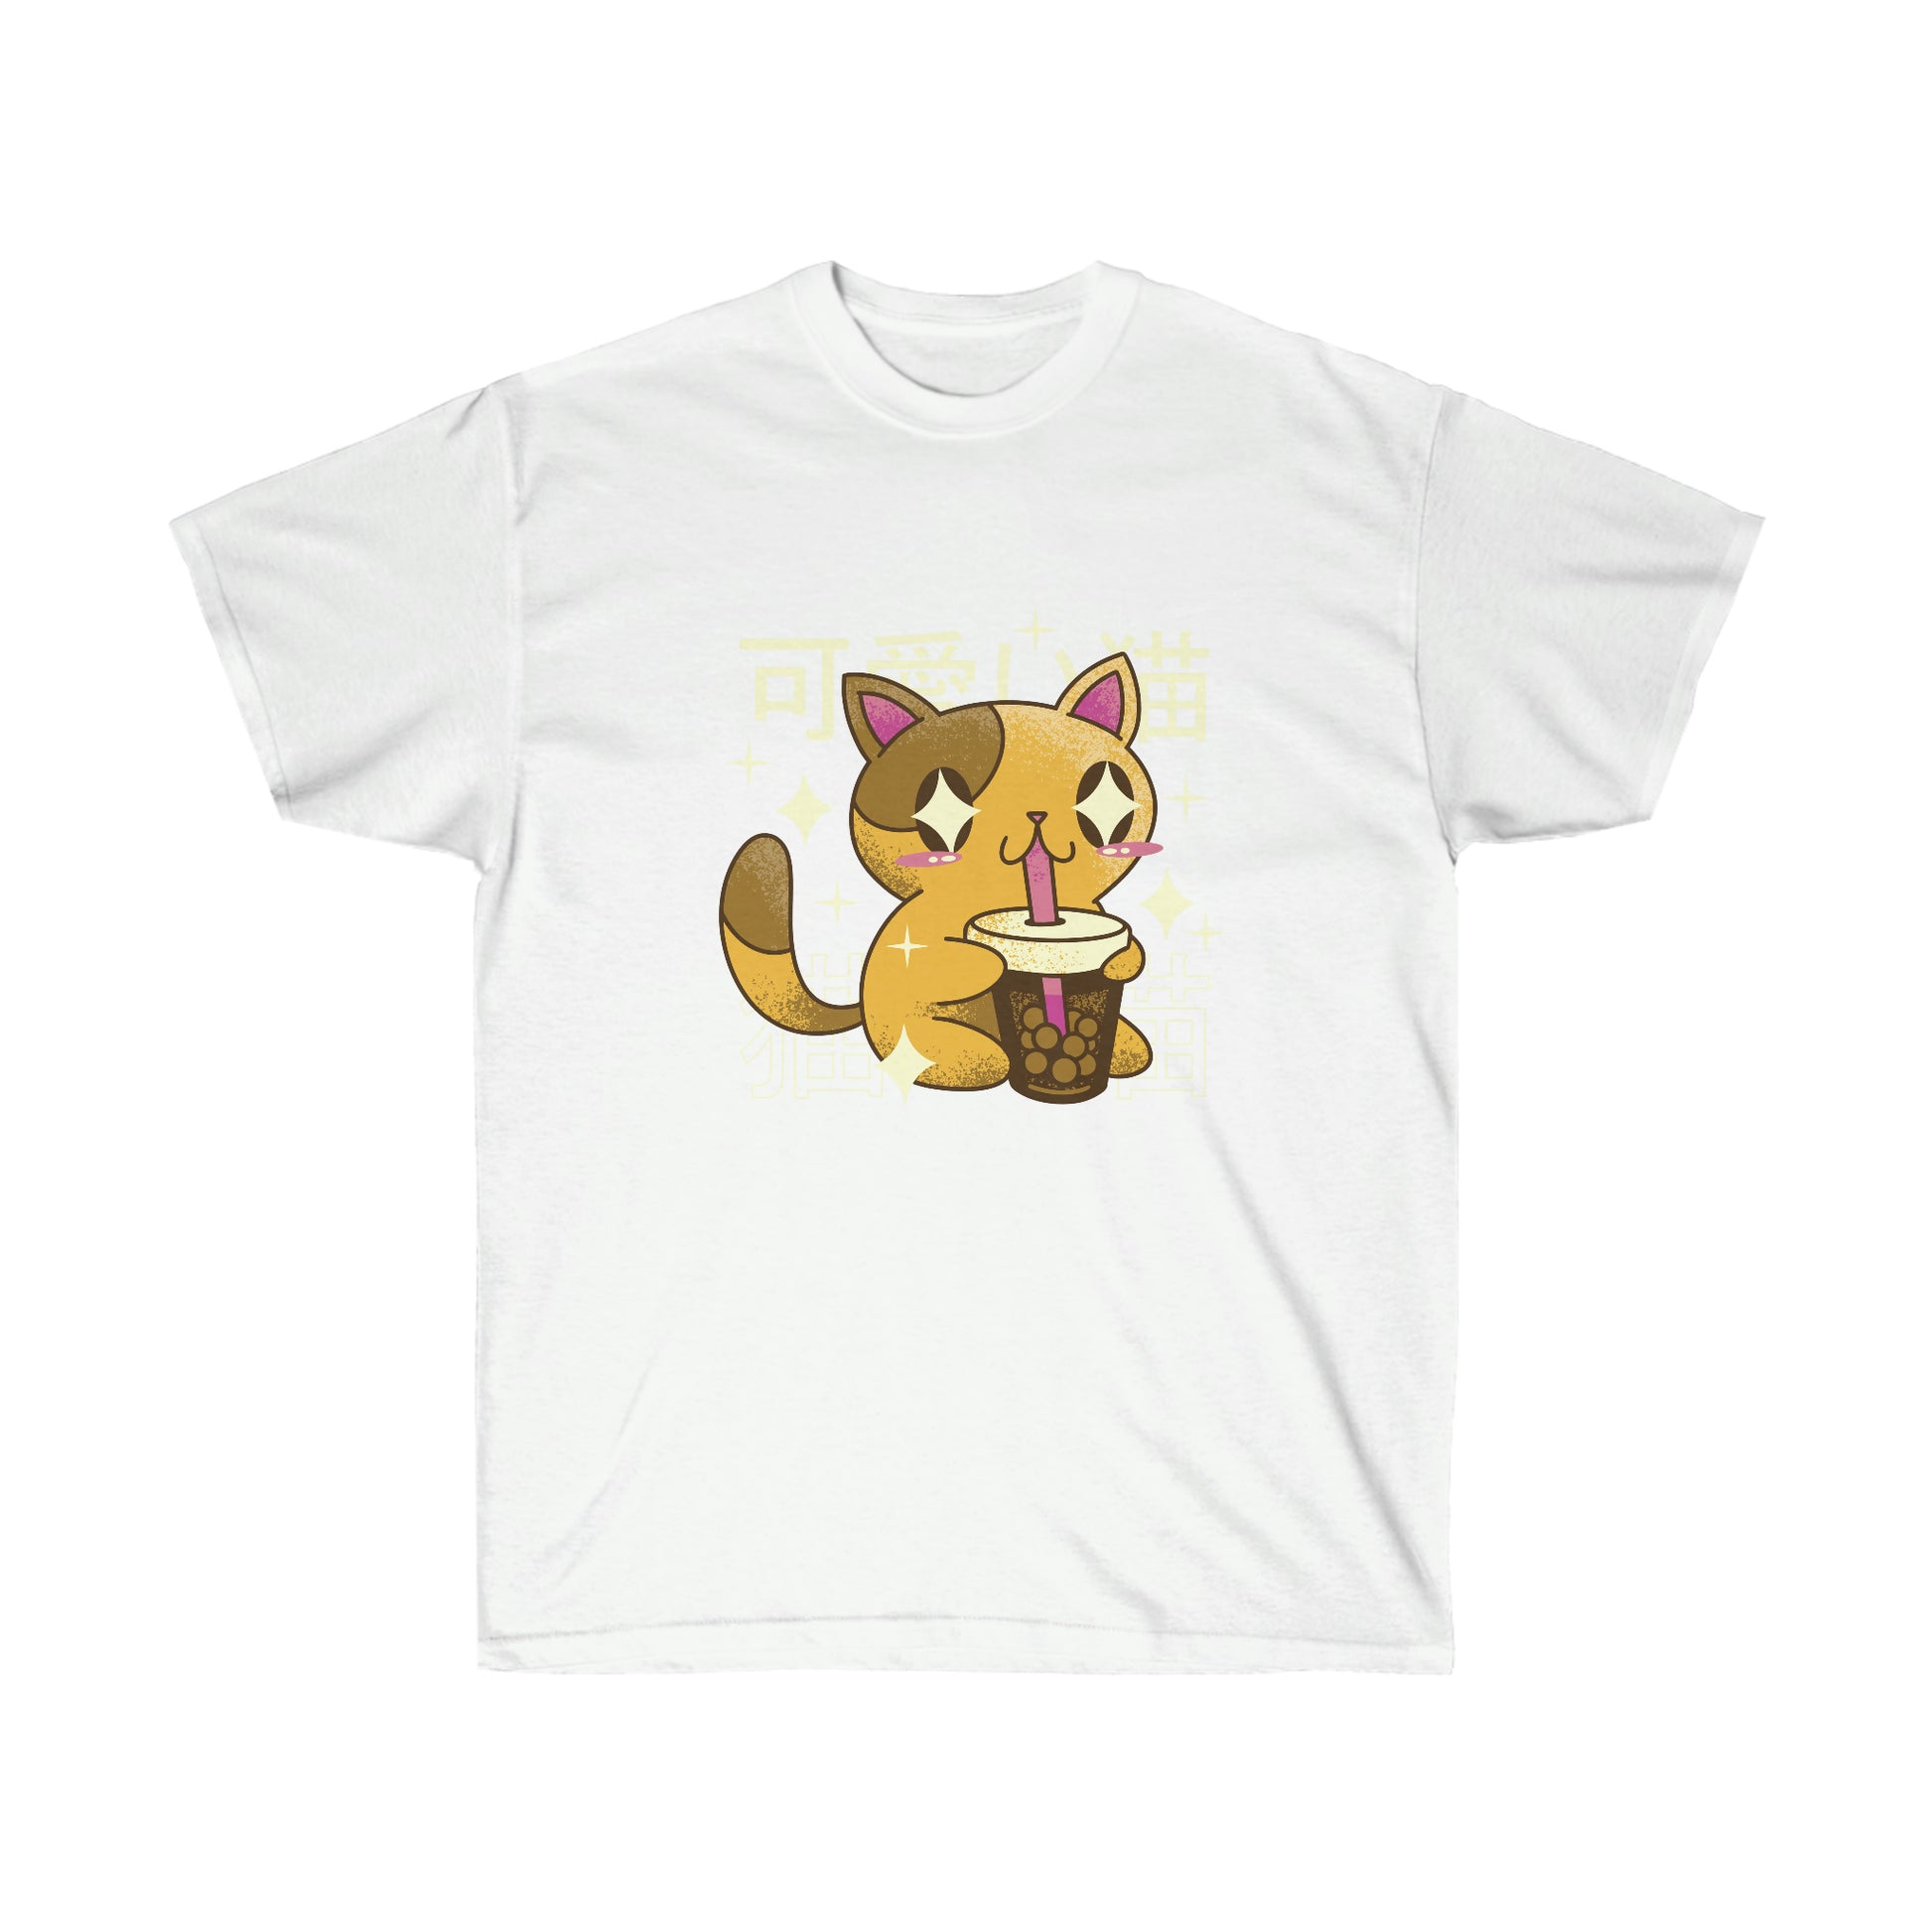 Kawaii Sweatshirt, Kawaii Clothing, Kawaii Clothes, Yami Kawaii Aesthetic, Pastel Kawaii Cat Bubble Tea Sweatshirt T-Shirt